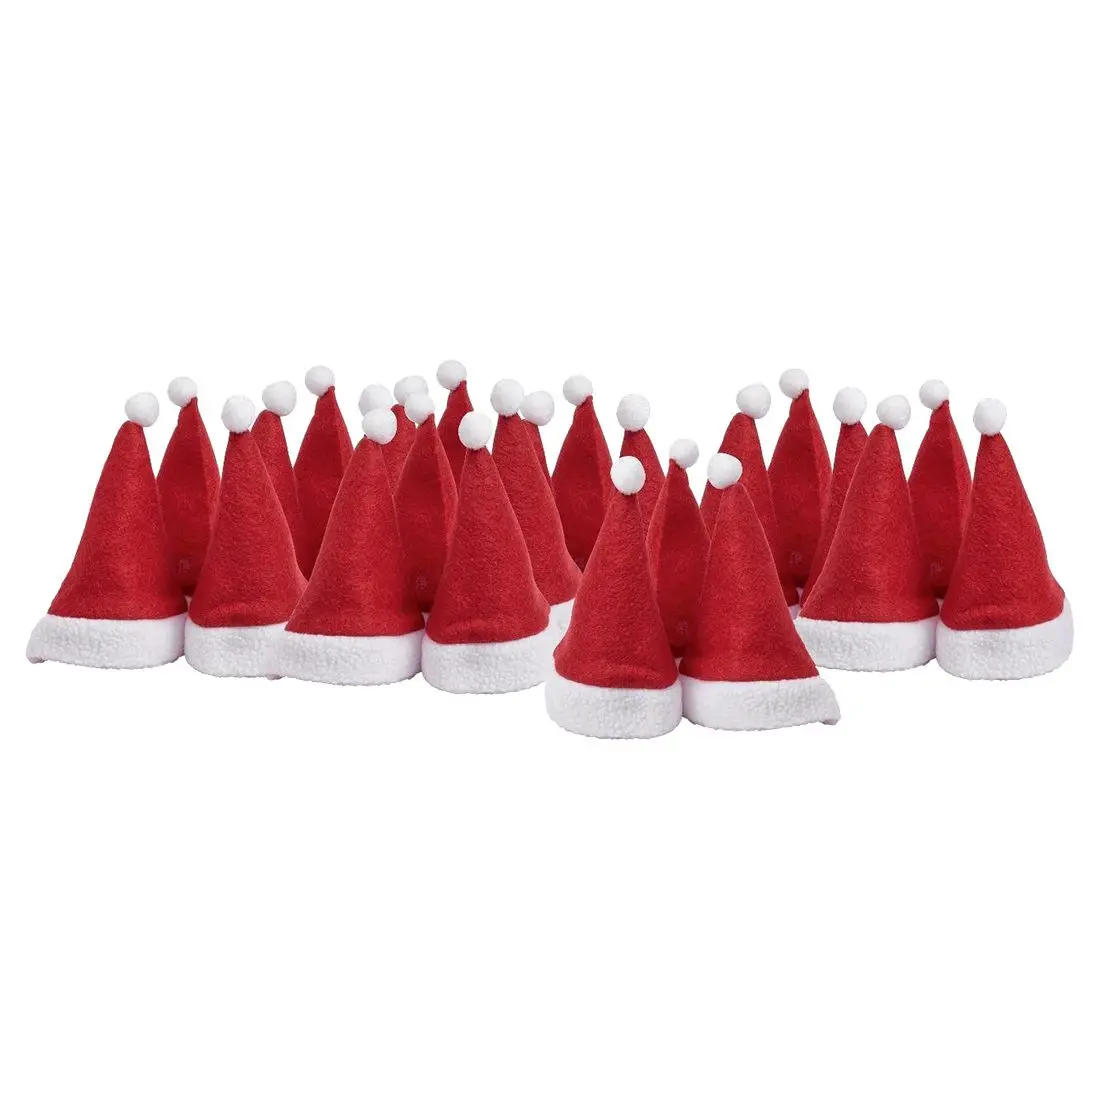 24 x рождественские шляпы для 6 см пальто Санта-Клауса кукольная шляпа Рождественская шляпа Адвент календарь